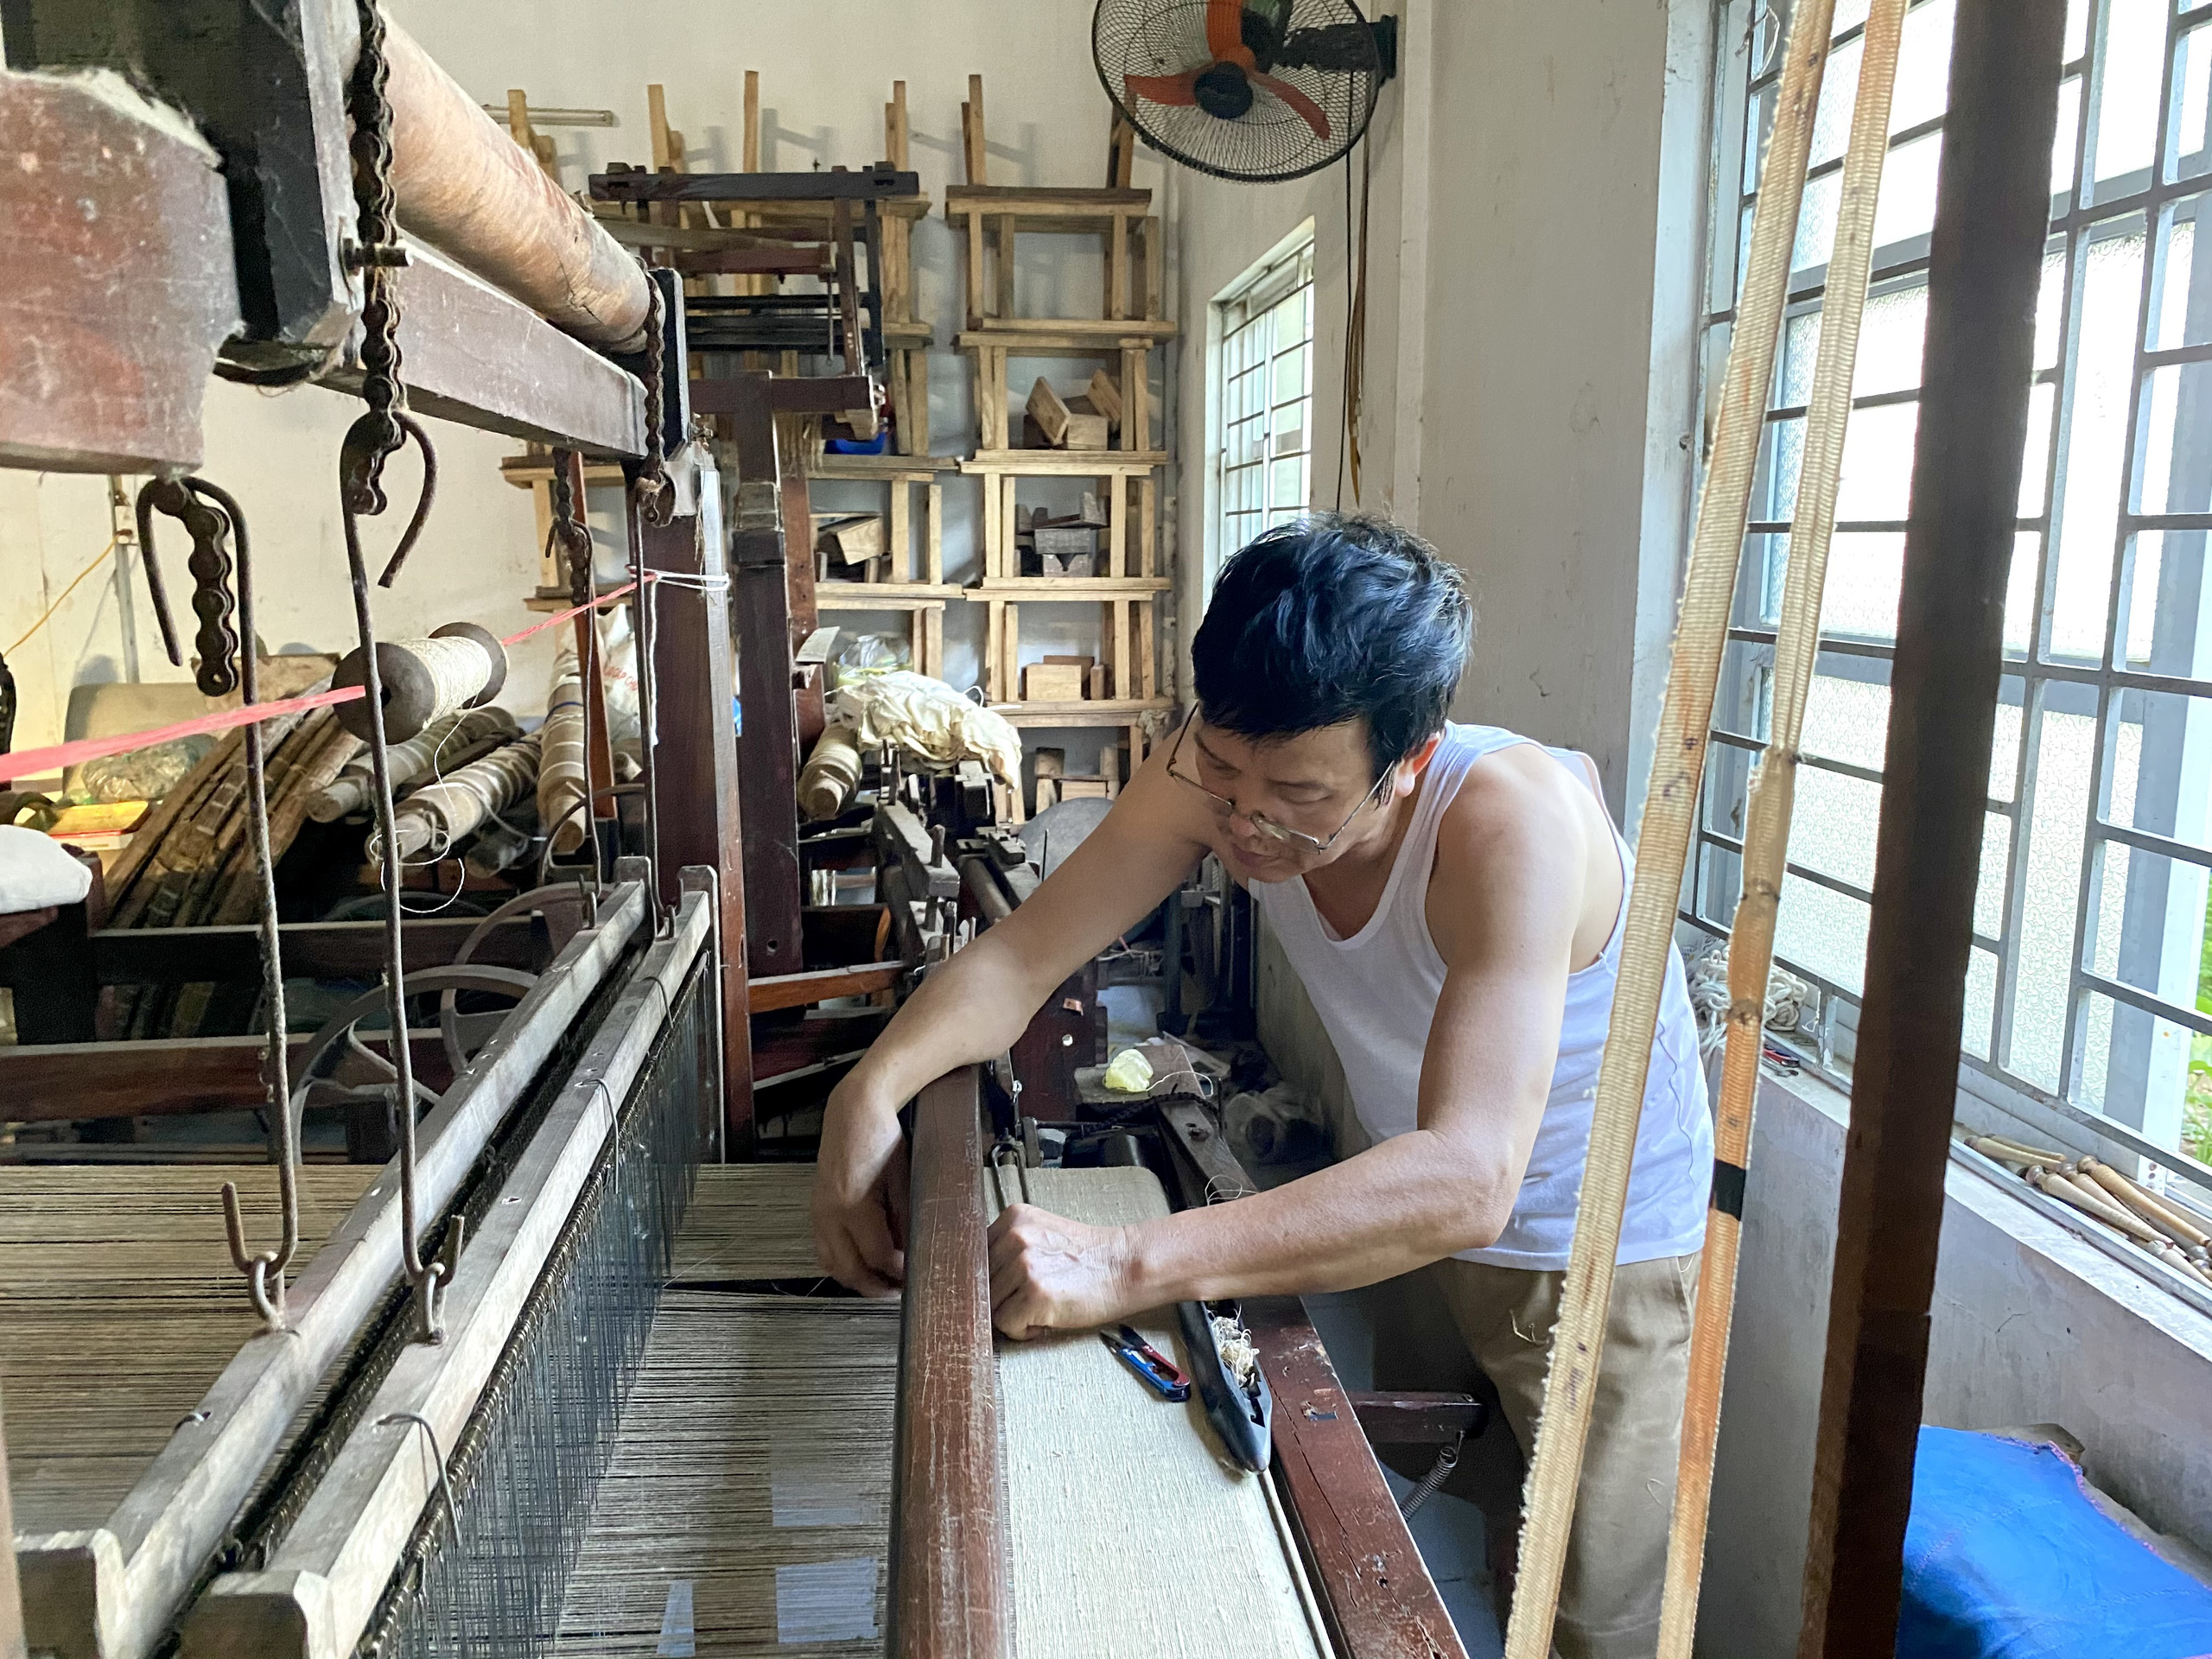 Độc đáo cho tằm tự dệt vải, làng Phùng Xá cố công gìn giữ nghề cổ truyền - Ảnh 4.